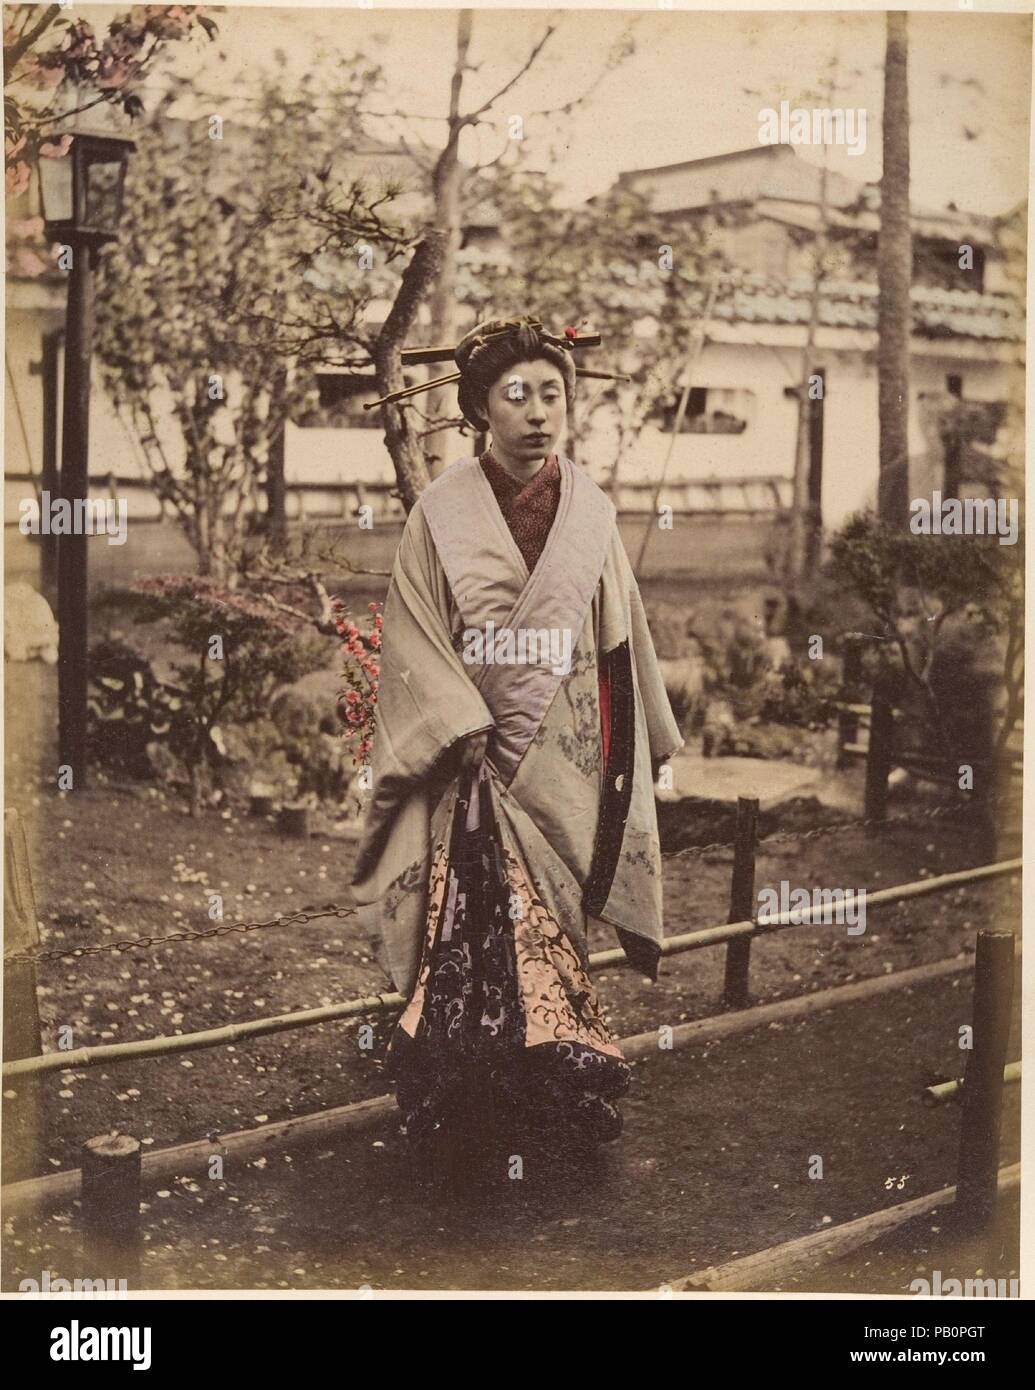 [Japanische Frau in traditioneller Kleidung posiert im Freien]. Artist: Suzuki Shin'ichi (Japanisch, 1835-1919). Abmessungen: 25,2 x 19,8 cm (9 15/16 x 7 13/16 in.). Datum: 1870. Museum: Metropolitan Museum of Art, New York, USA. Stockfoto